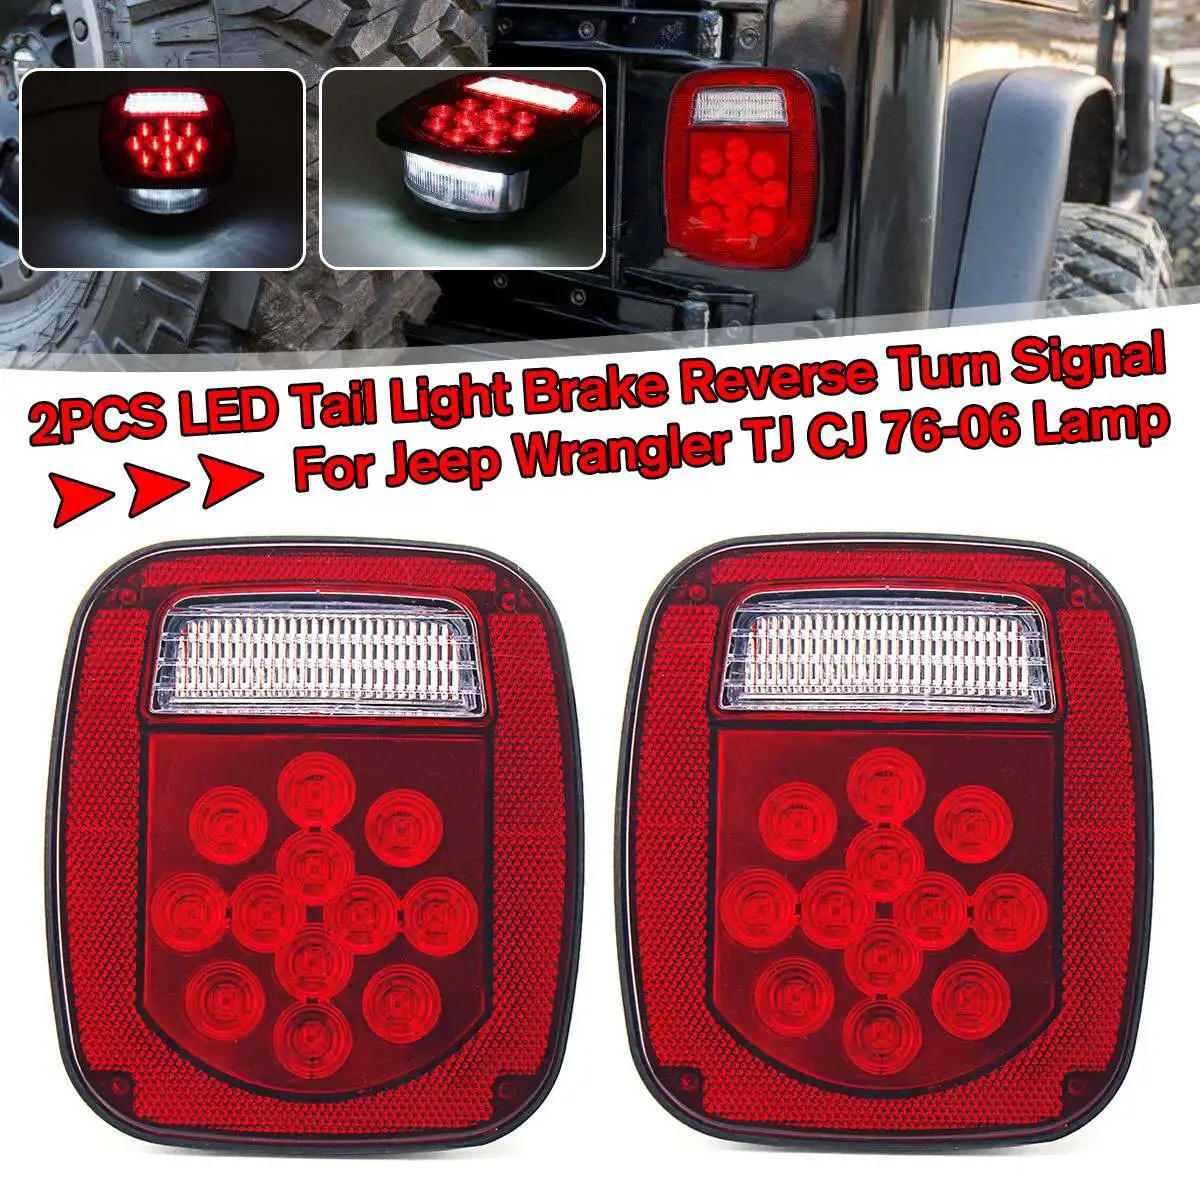 

2 Pcs LED Car Stop Rear Light Warning Lights Reverse Running Lamp for Truck/Trailer/Boat for Jeep for Wrangler TJ CJ 76-06